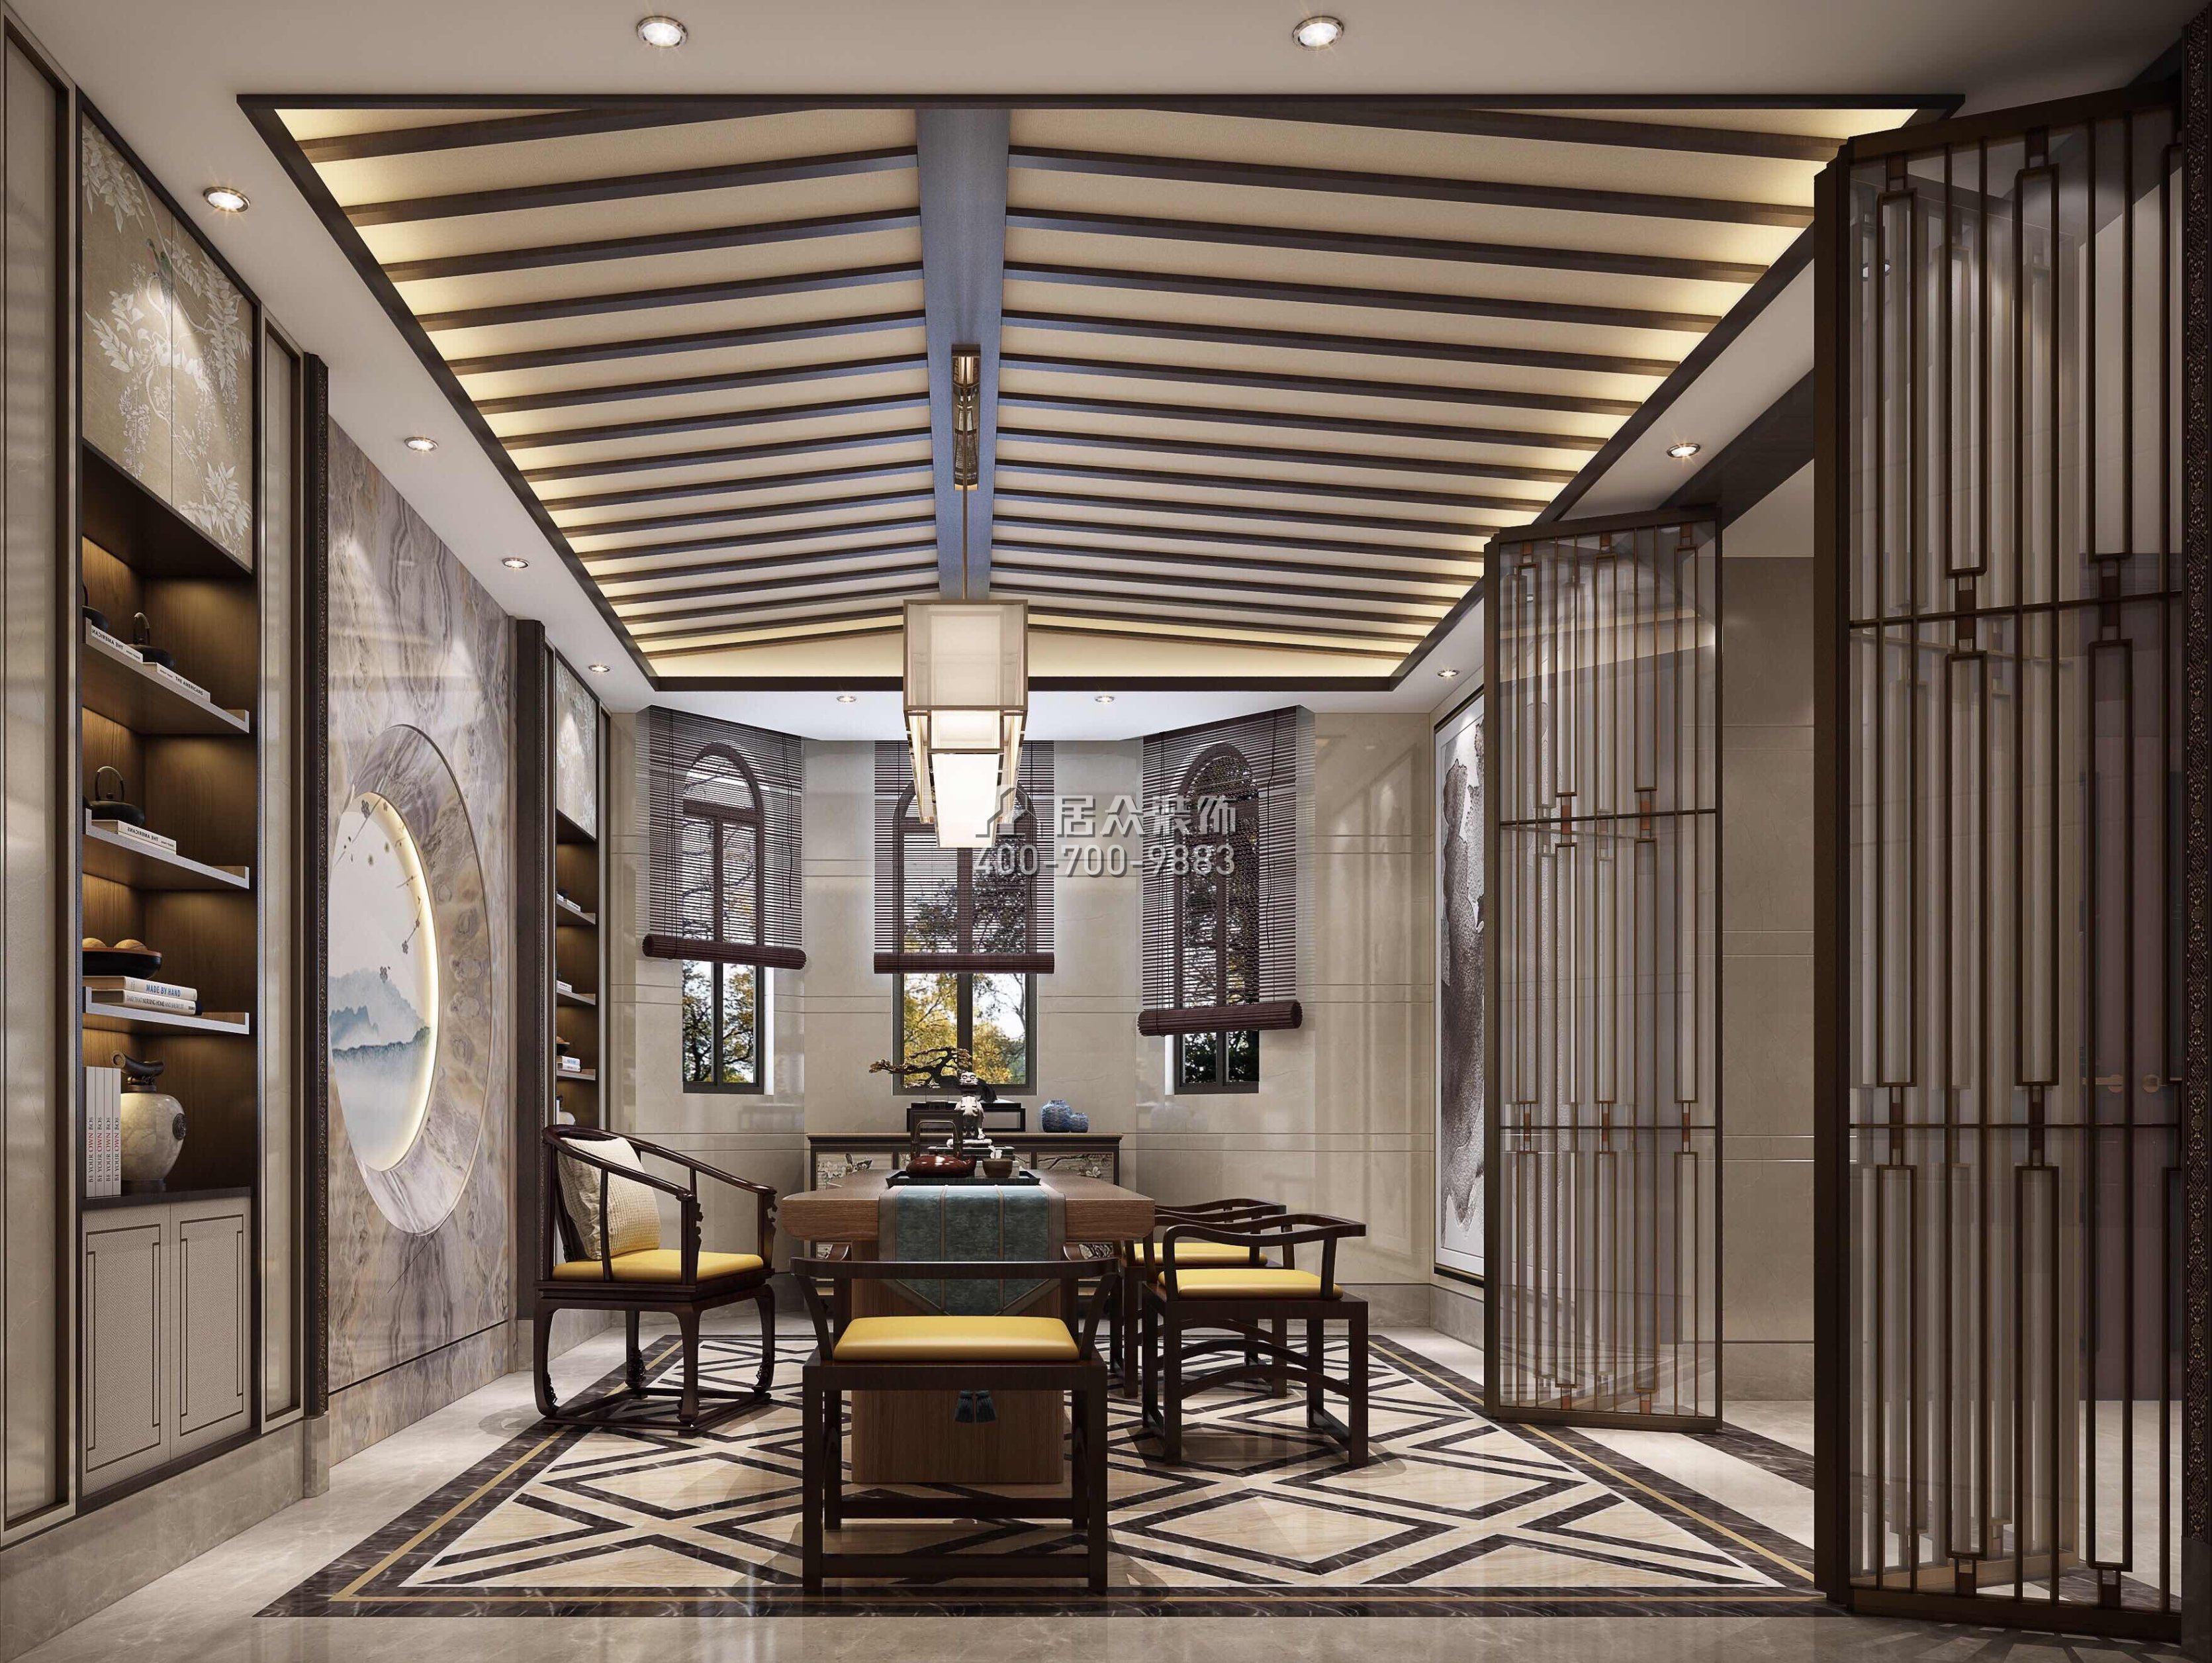 江畔豪庭500平方米中式風格別墅戶型茶室裝修效果圖